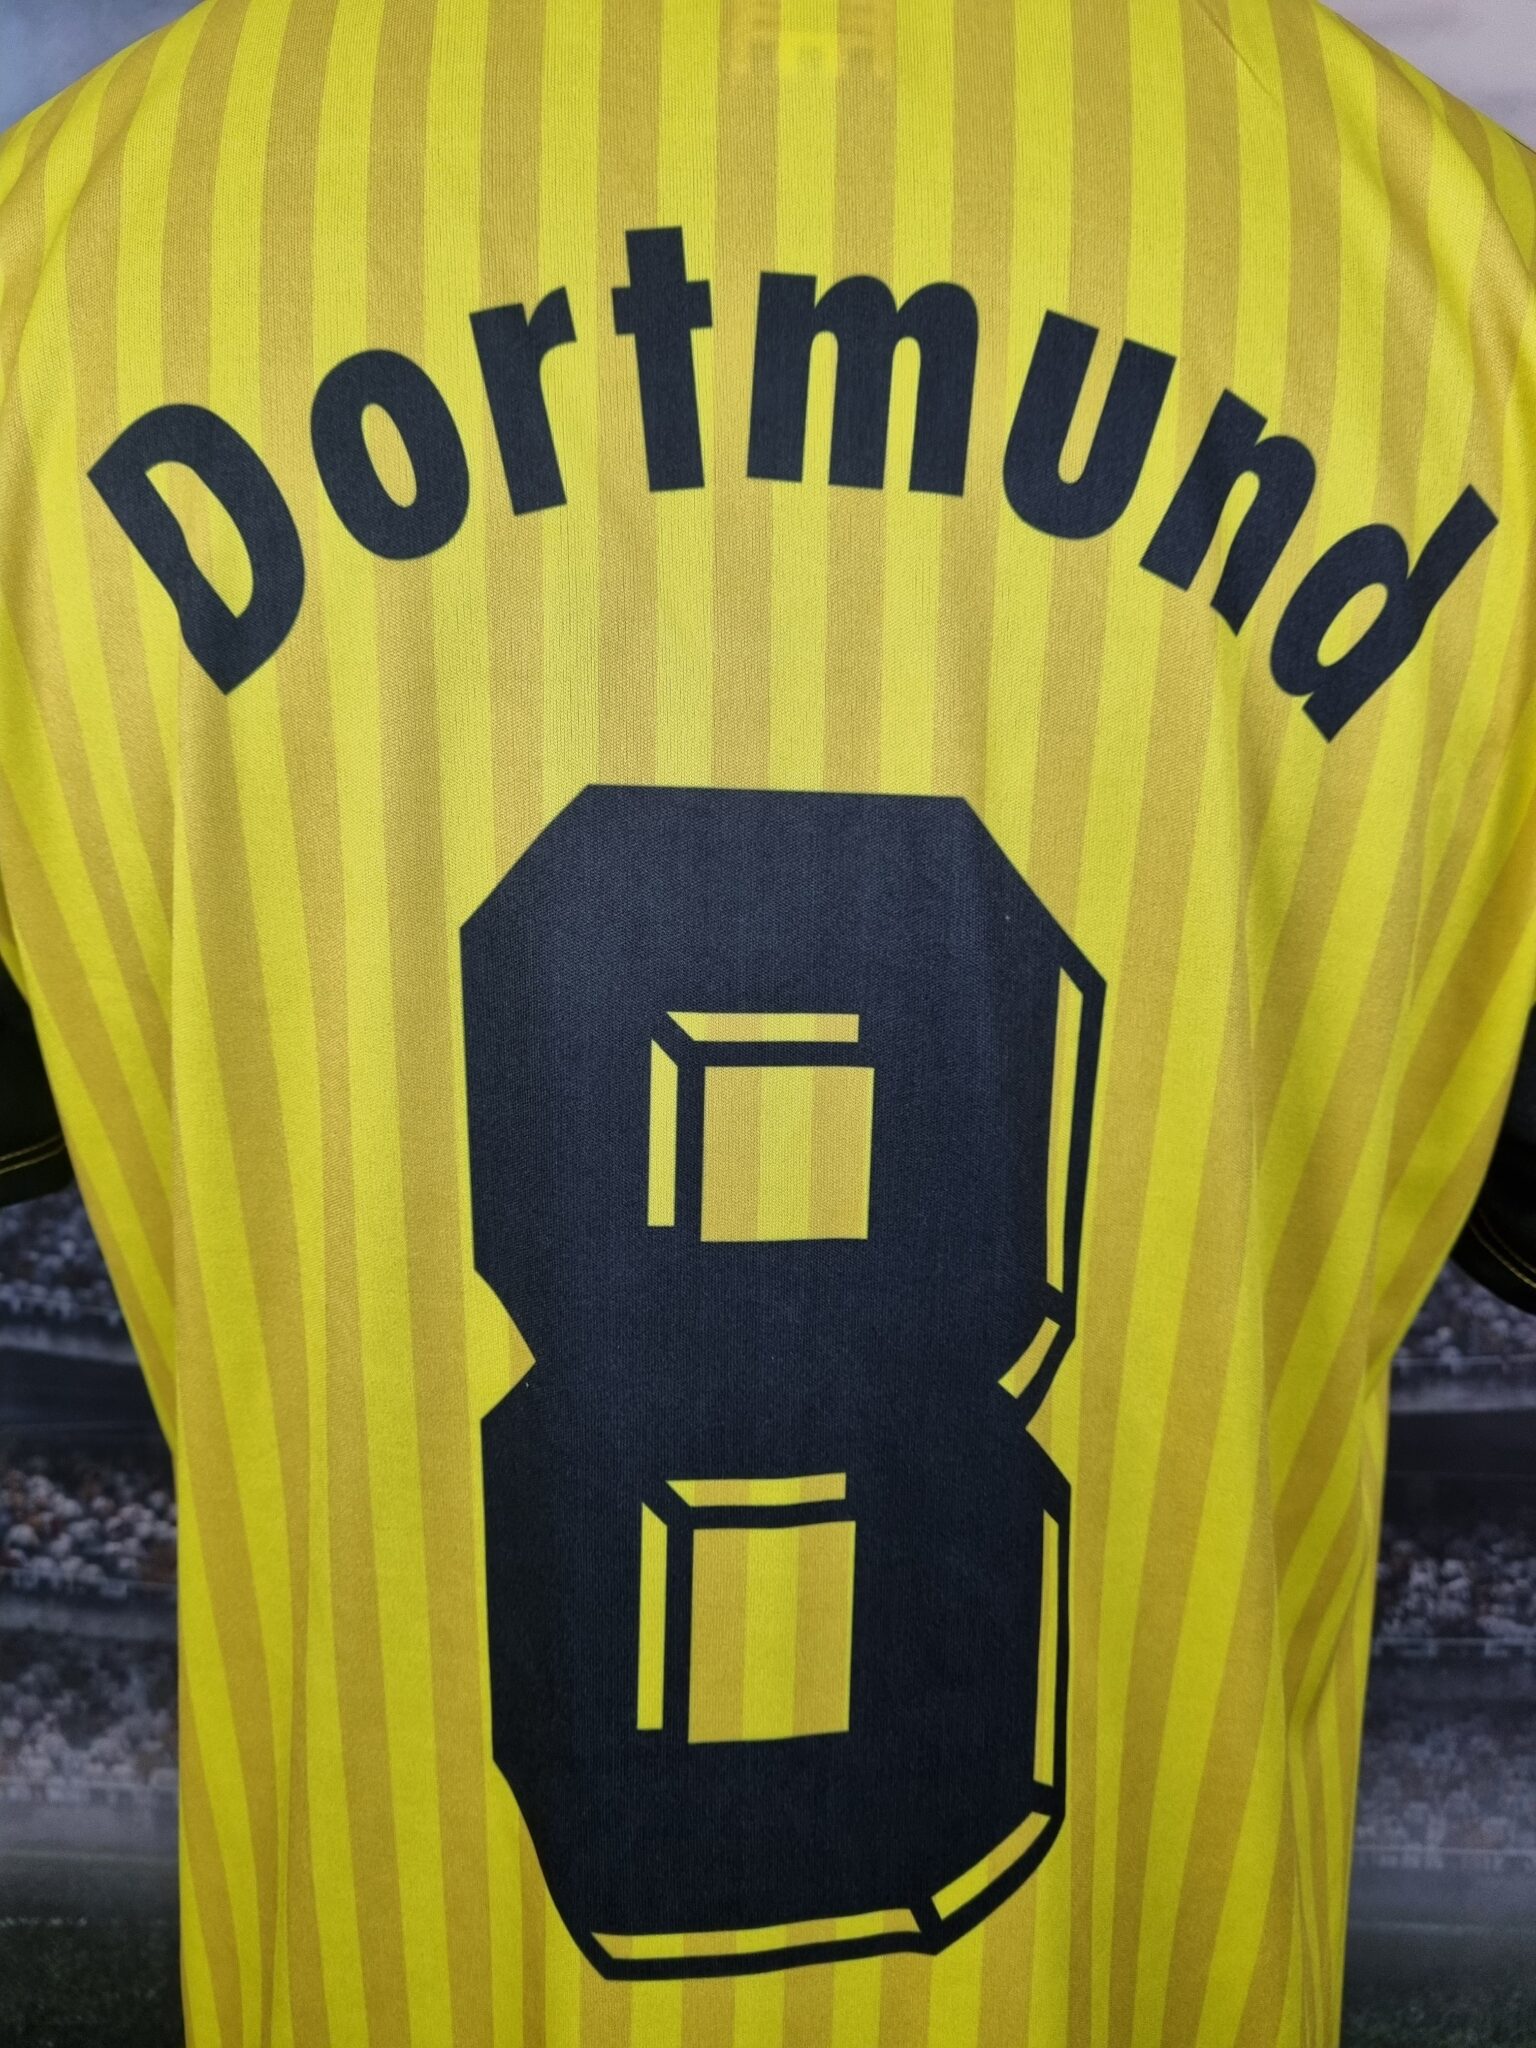 Borussia Dortmund Home Special Trikot 1989/1990 Retro Shirt Football Jersey #8 Zorc - Sport Club Memories